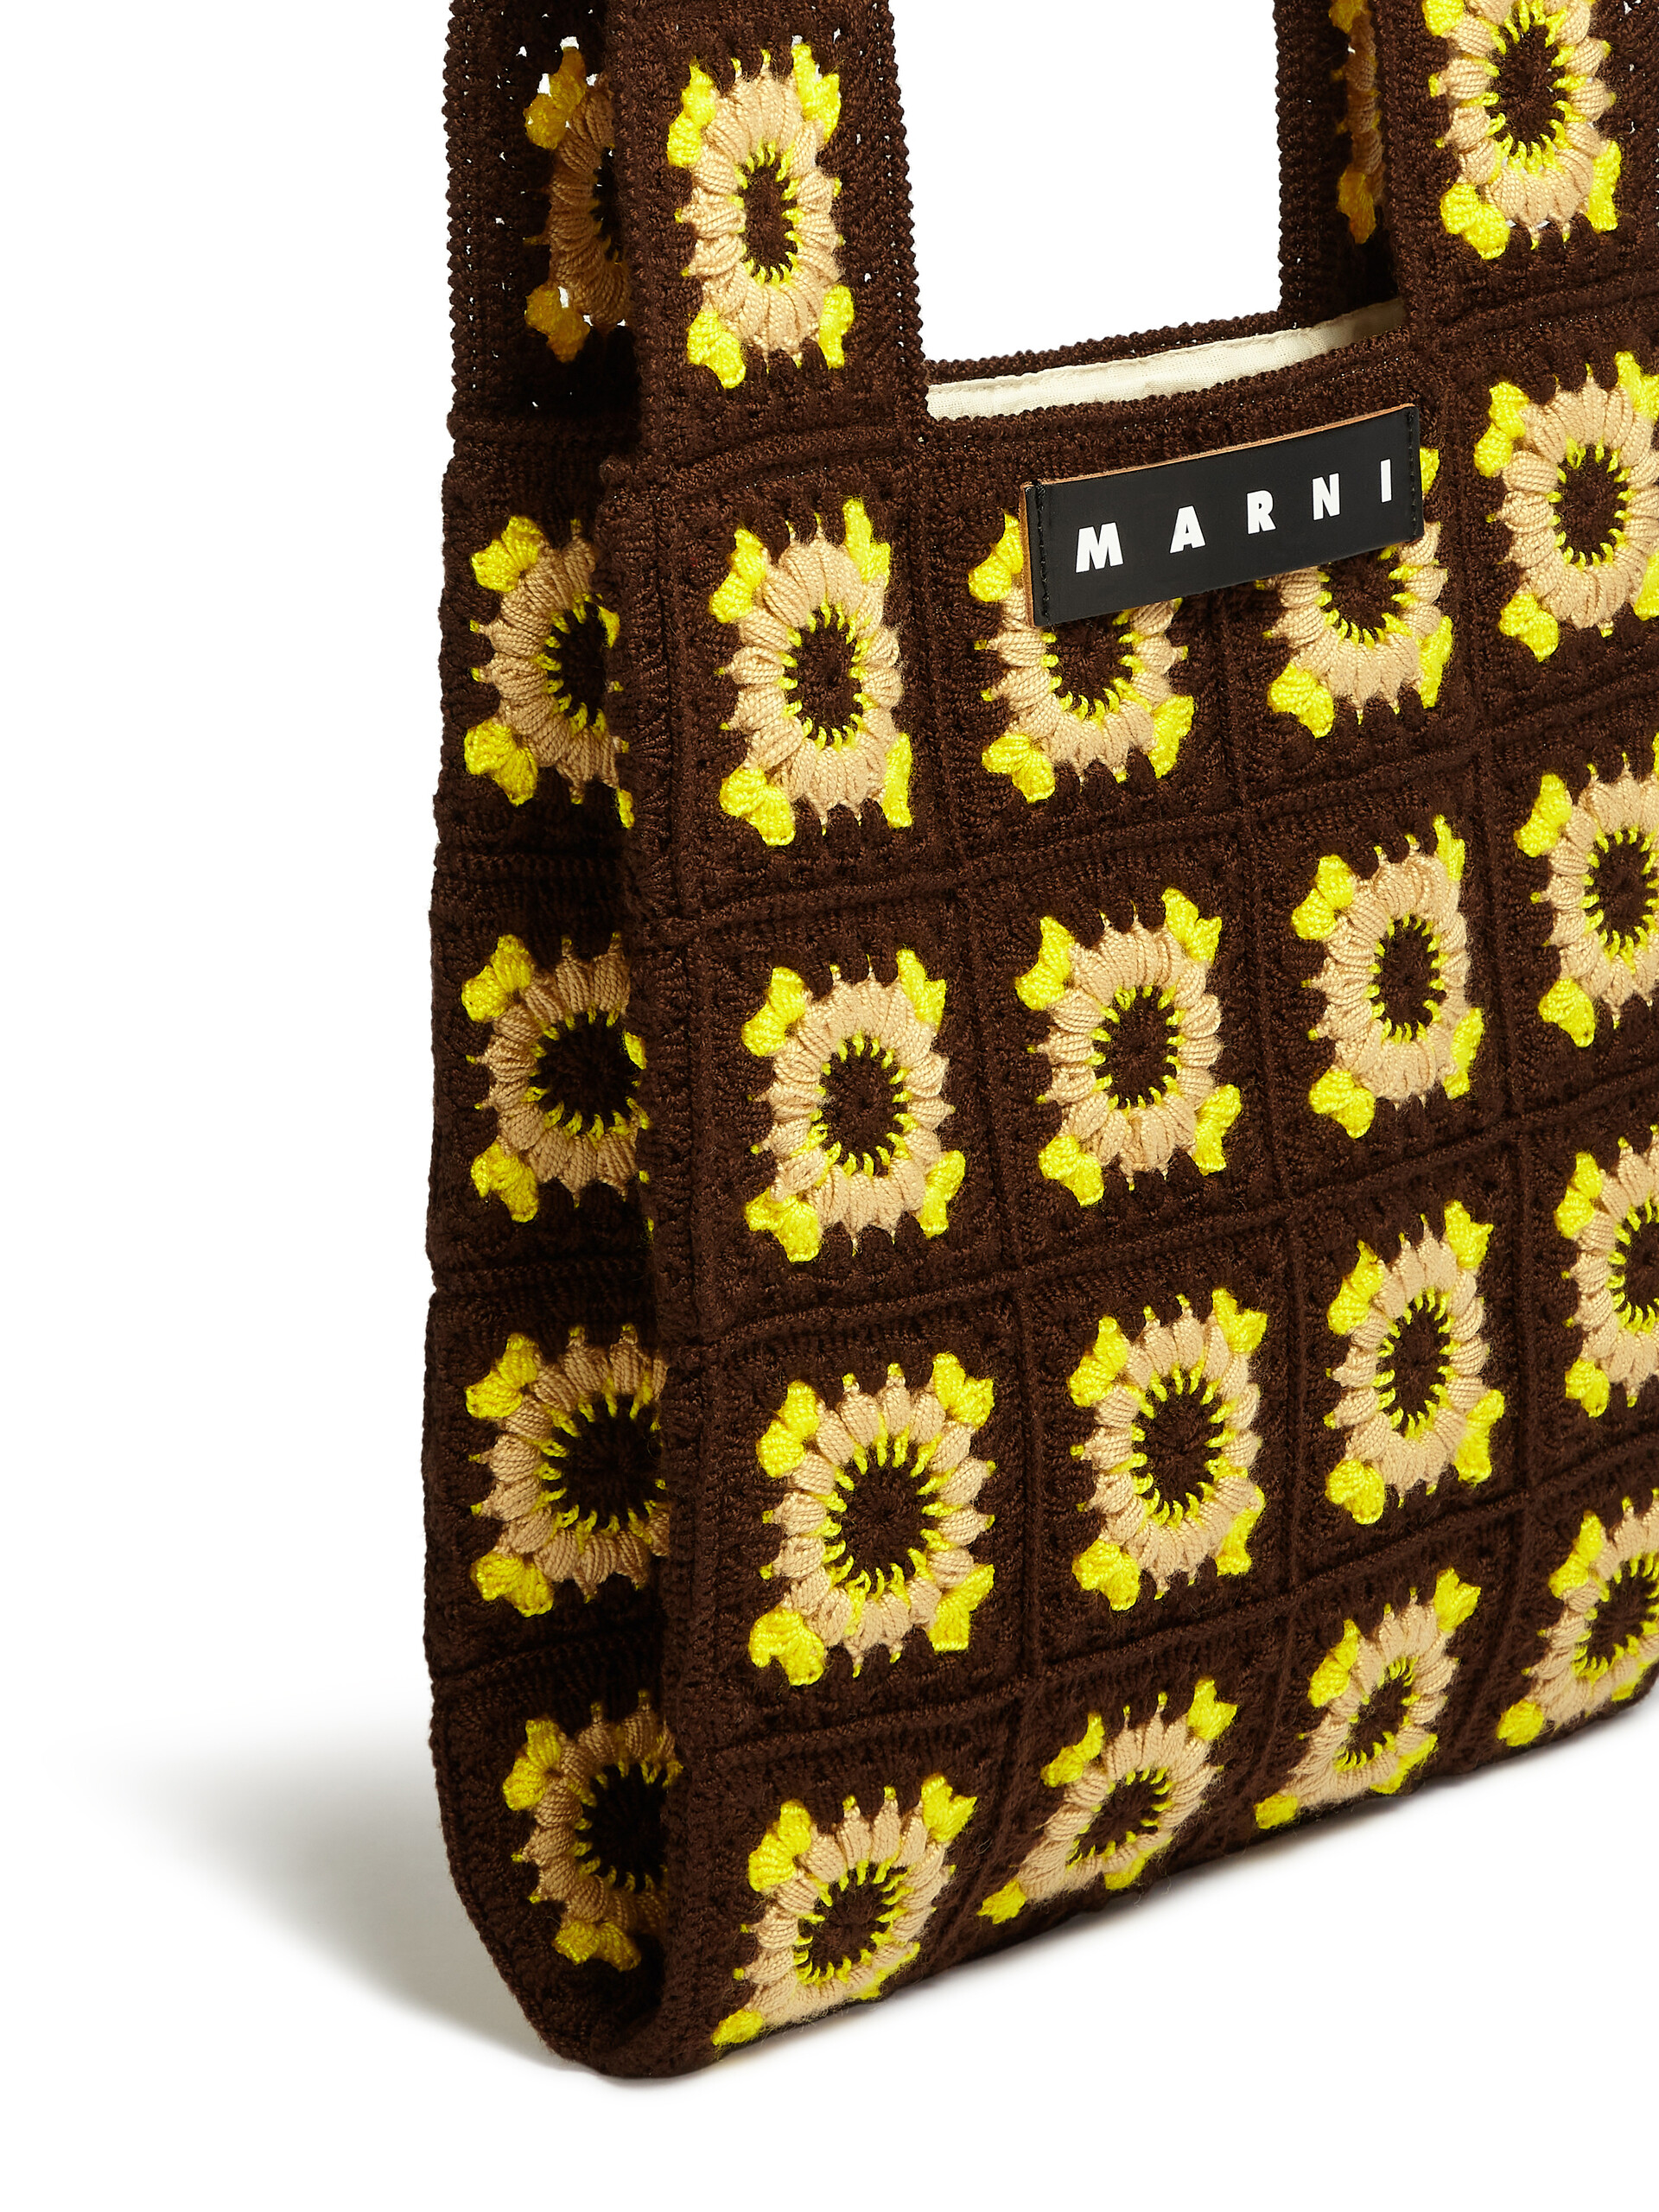 MARNI MARKET FISH bag in brown crochet - Bags - Image 4